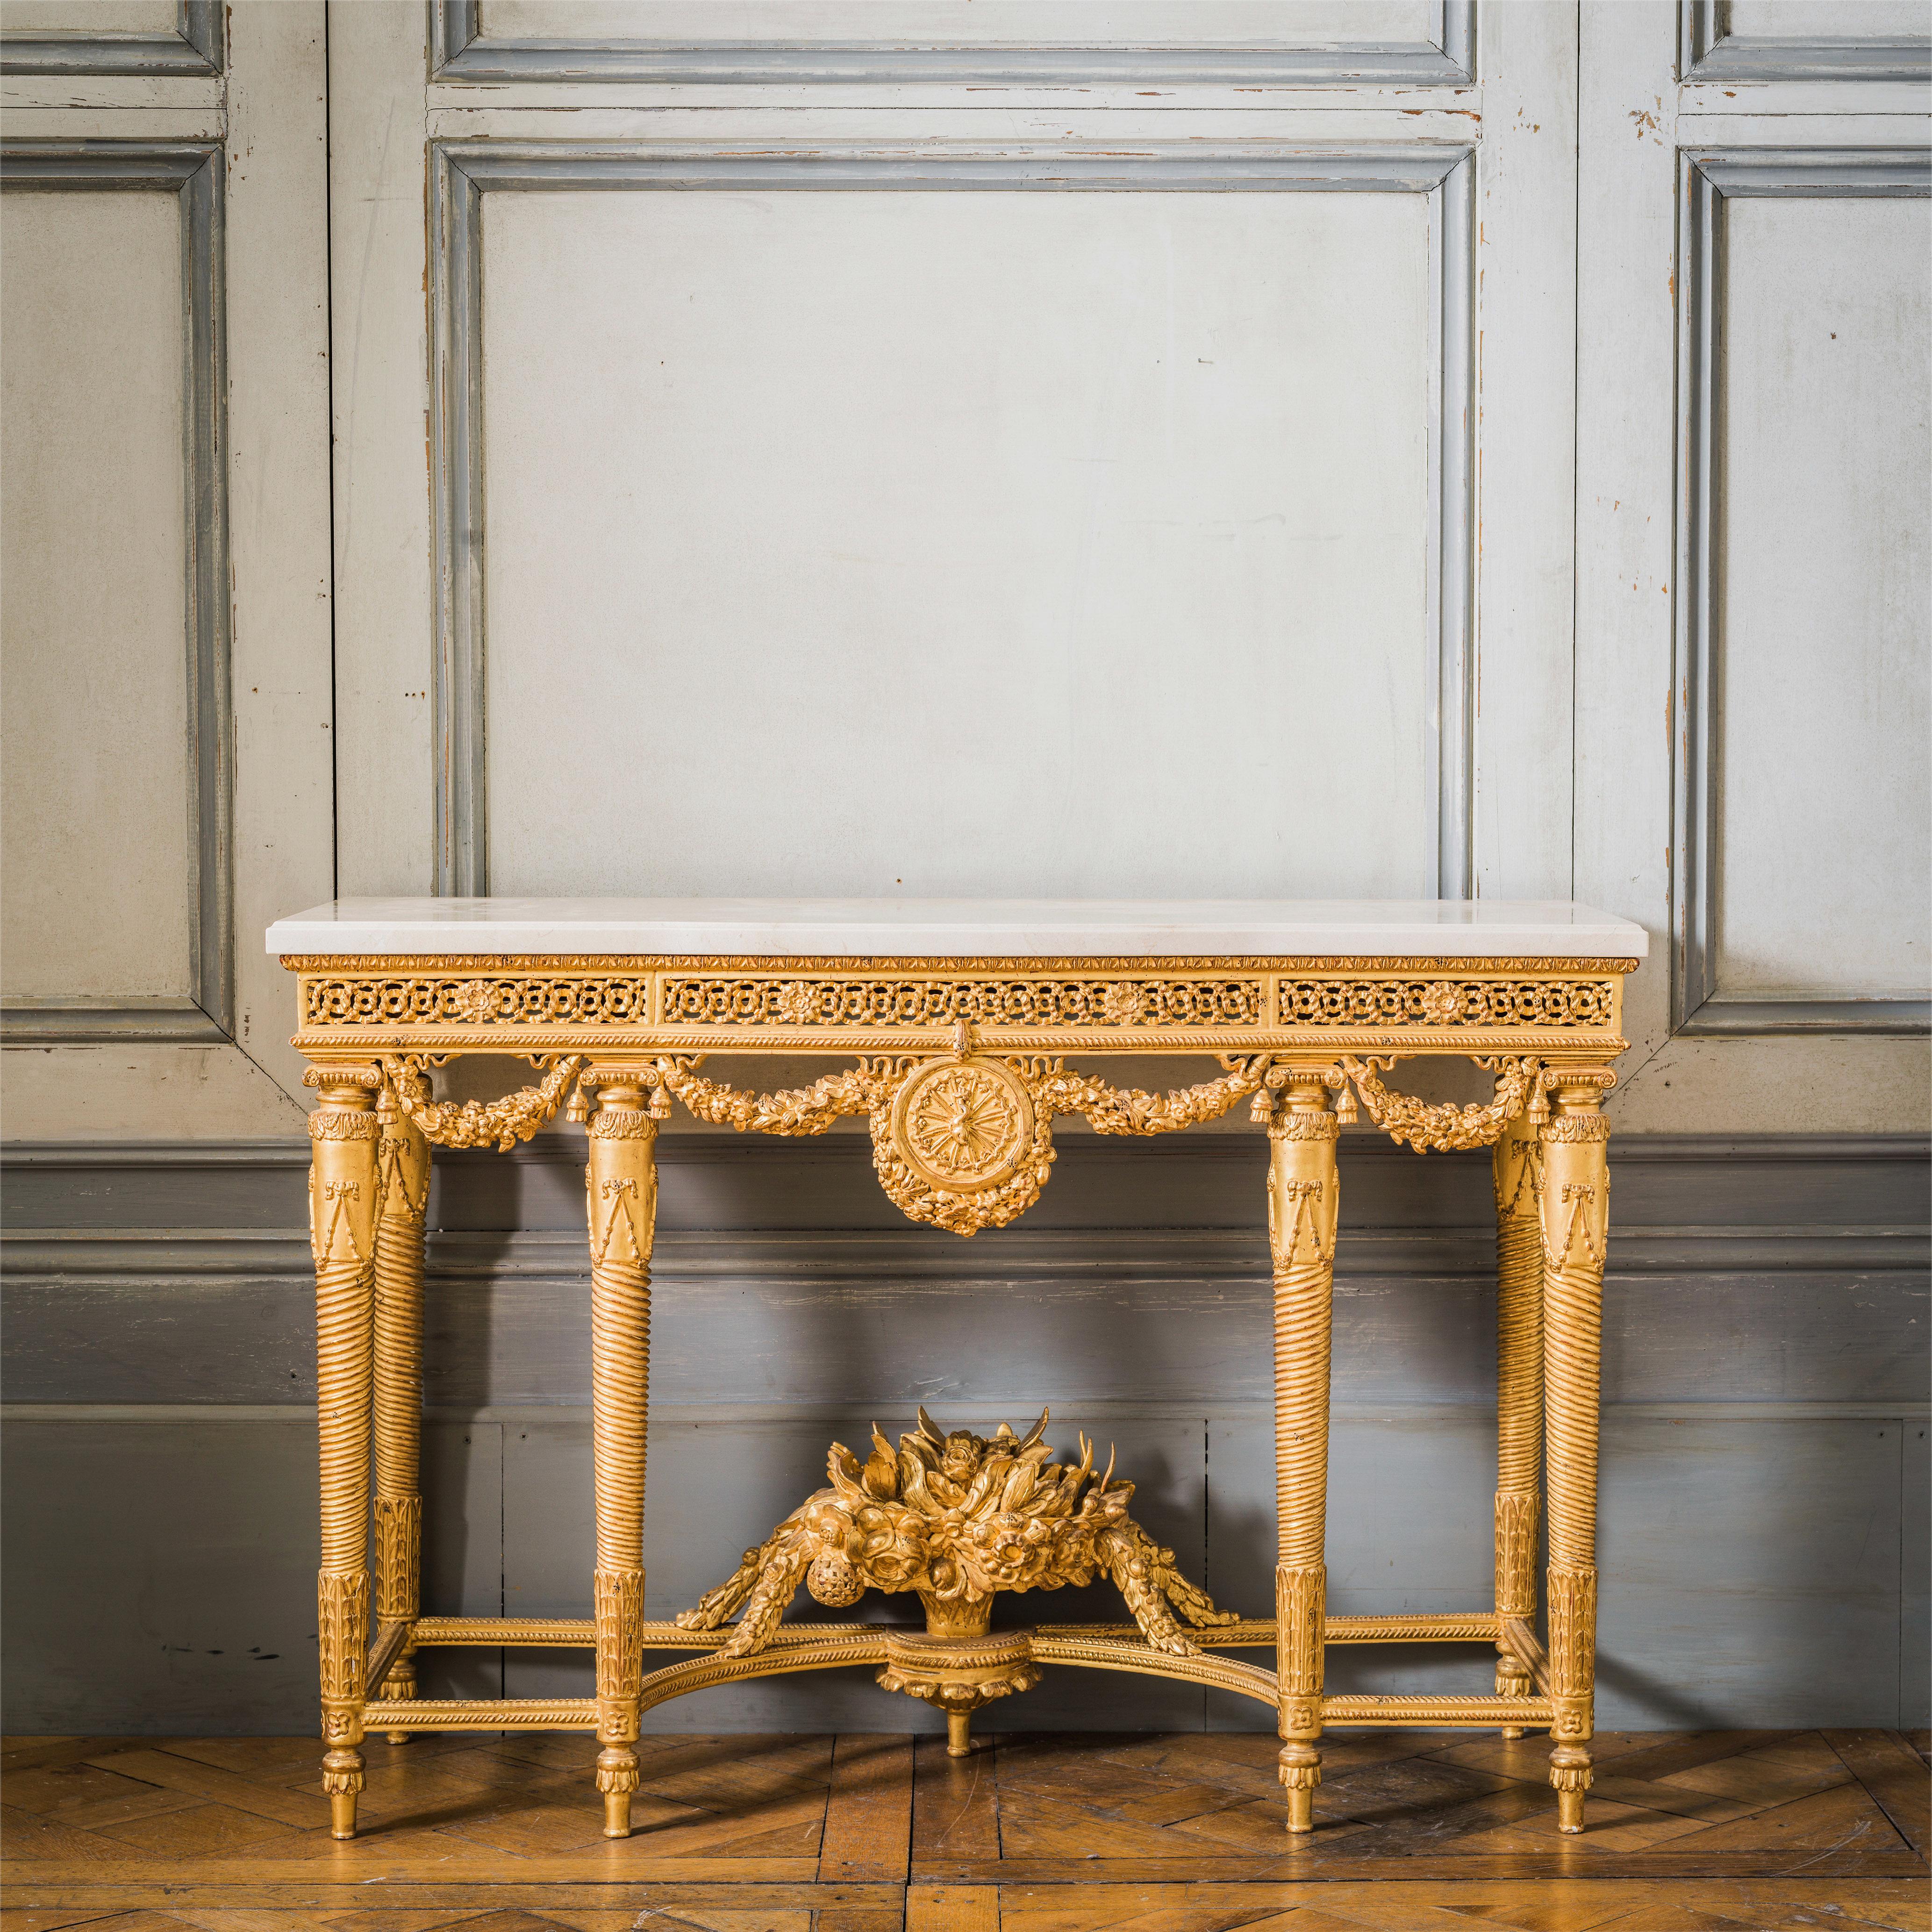 Consoles en bois doré de style Louis XVI : Réalisées par des maîtres artisans, élégamment sculptées et finies à la main dans une patine dorée à l'eau à la feuille d'or 23,75 carats. Dessus en marbre Crema Marfil biseauté de 30 mm.
Nous en avons 2